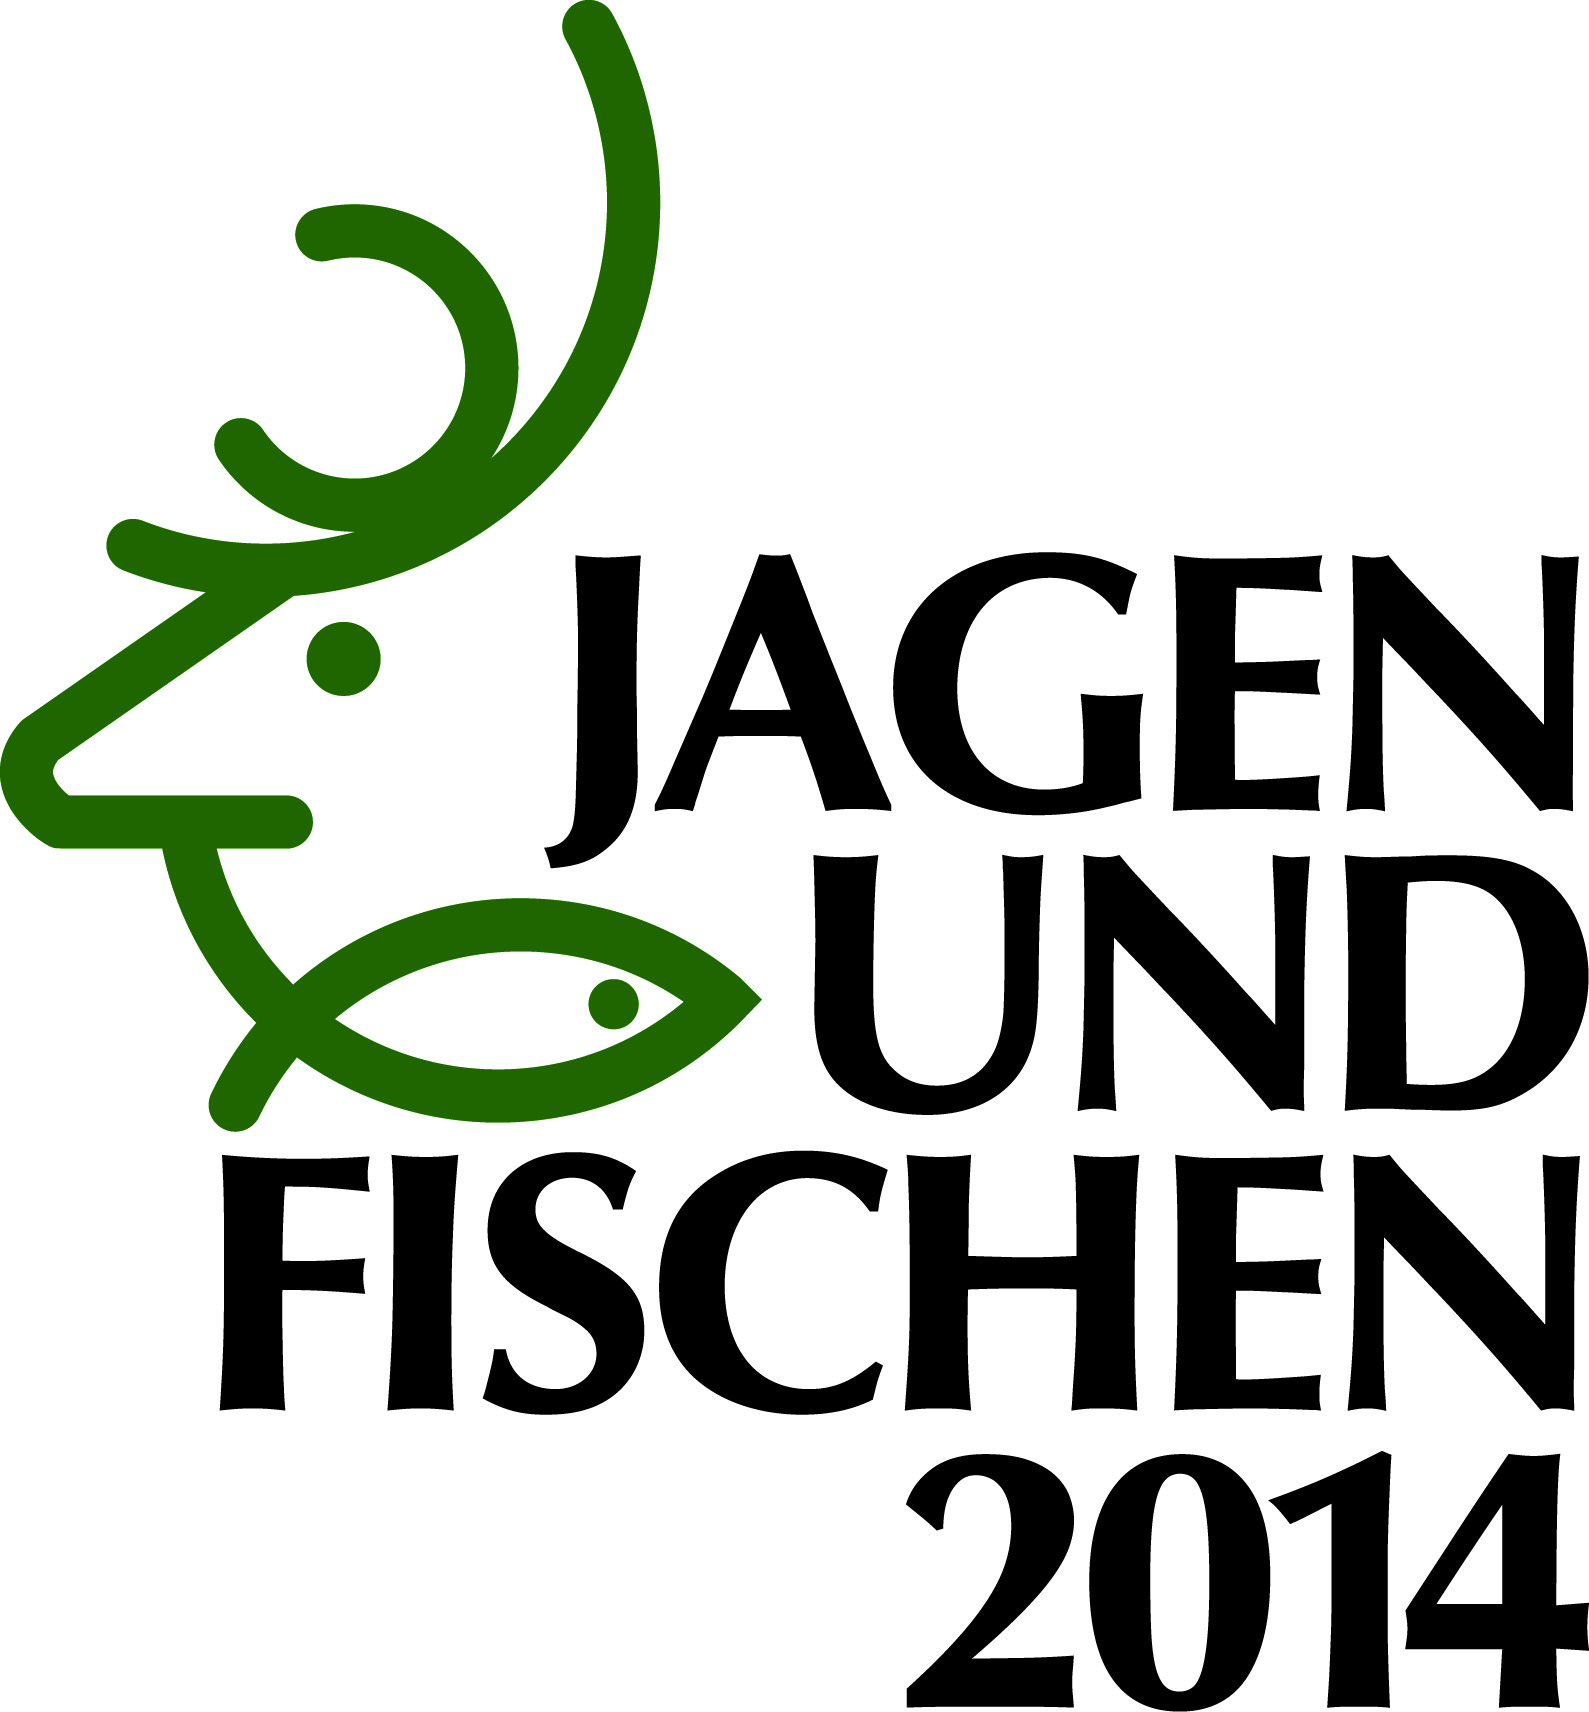 Jagen und Fischen 2014 – Messe in Augsburg